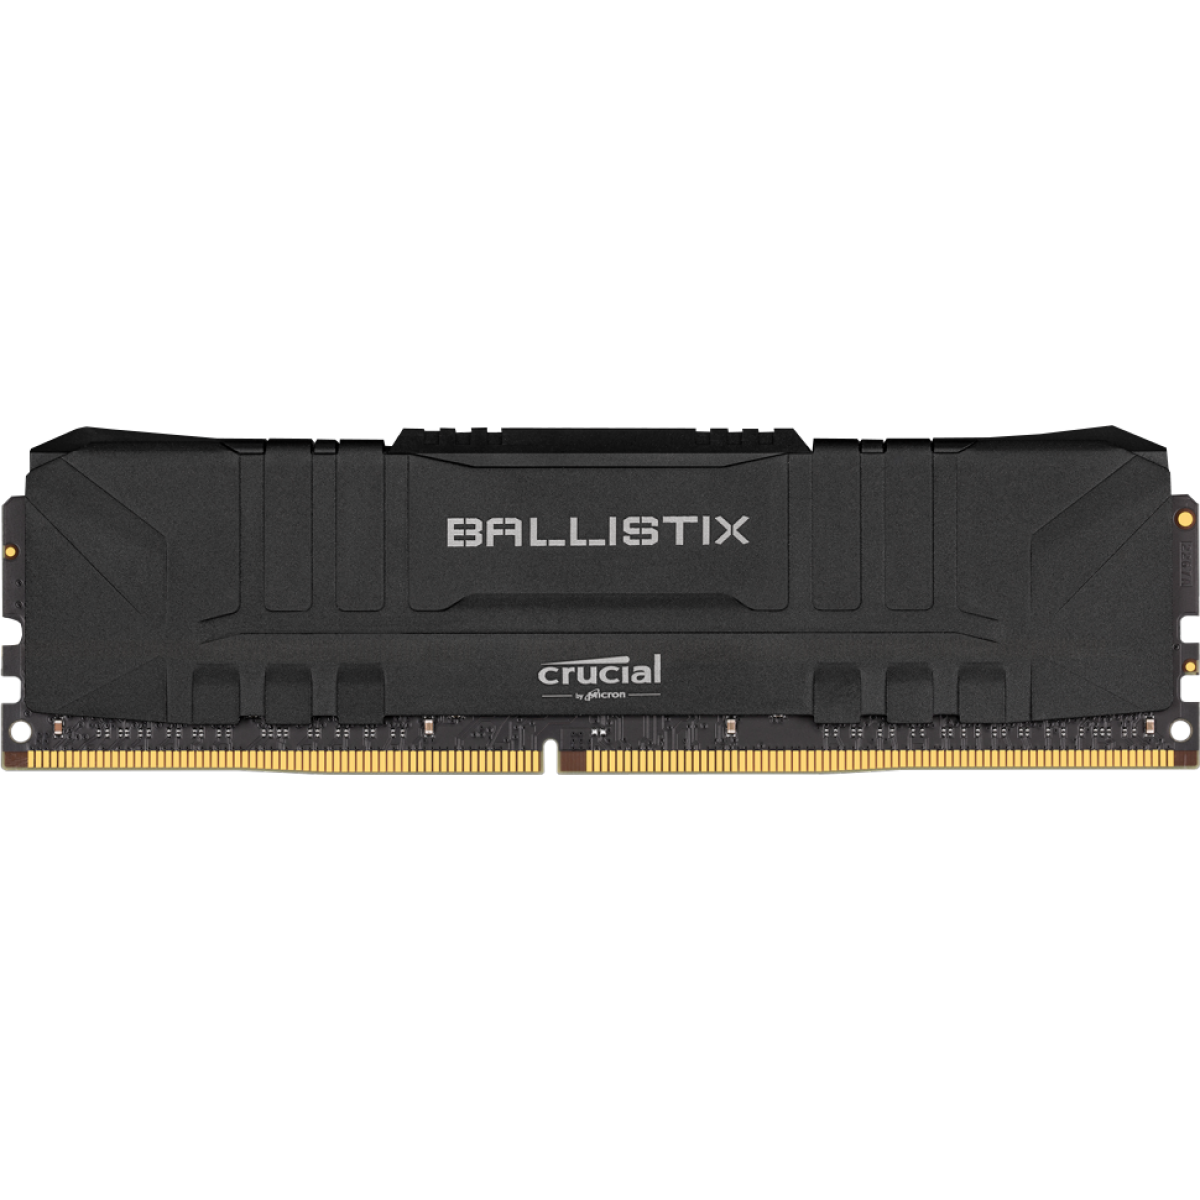 Memória DDR4 Crucial Ballistix, 8GB, 3000MHz, Black, BL8G30C15U4B